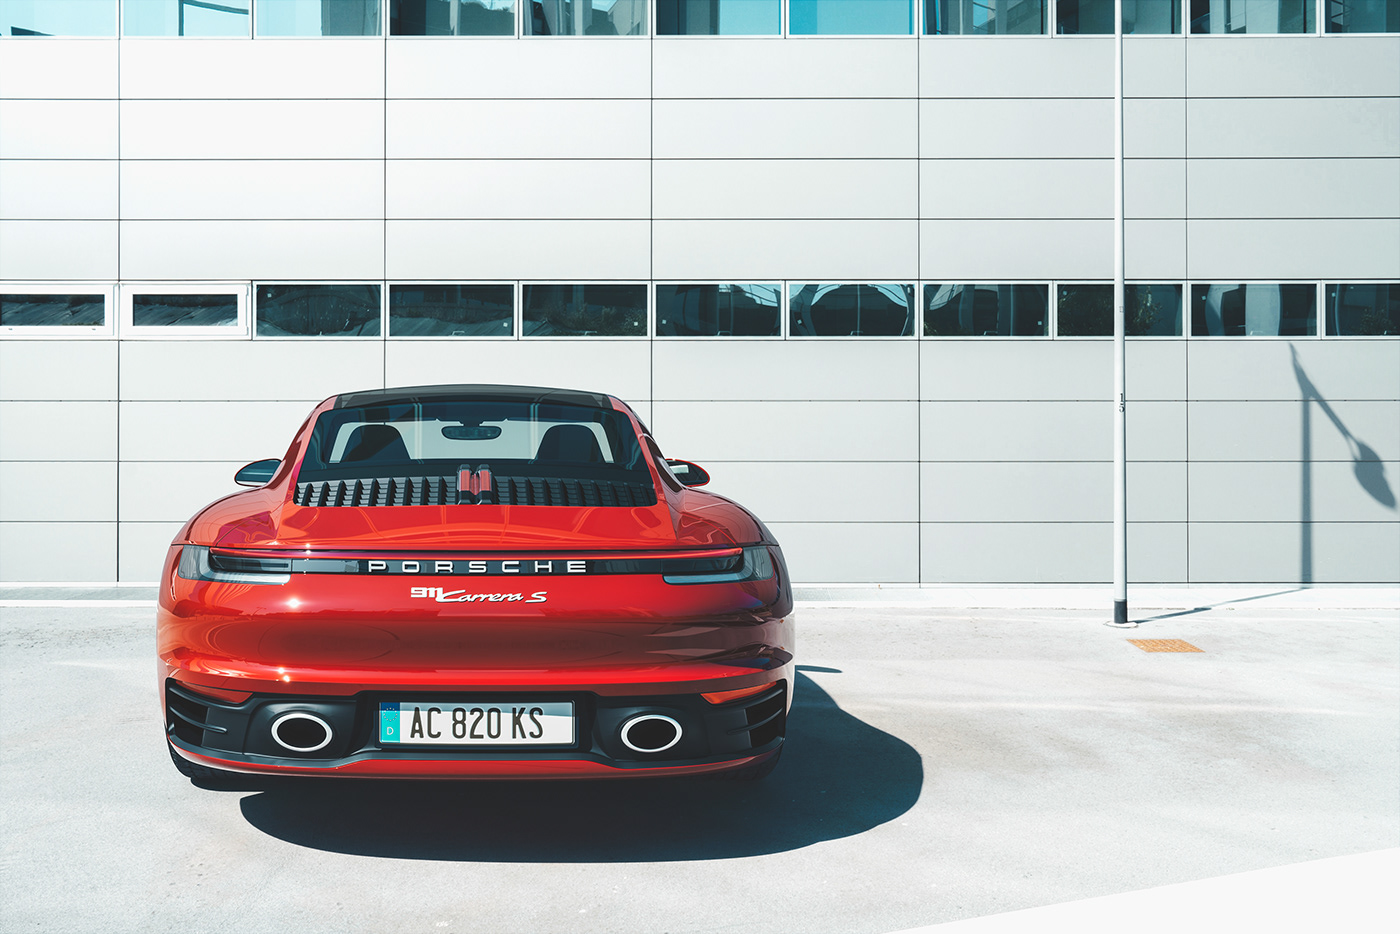 backplates HDRI milan Porsche Porsche 911 Portello red sport supercar automotive  